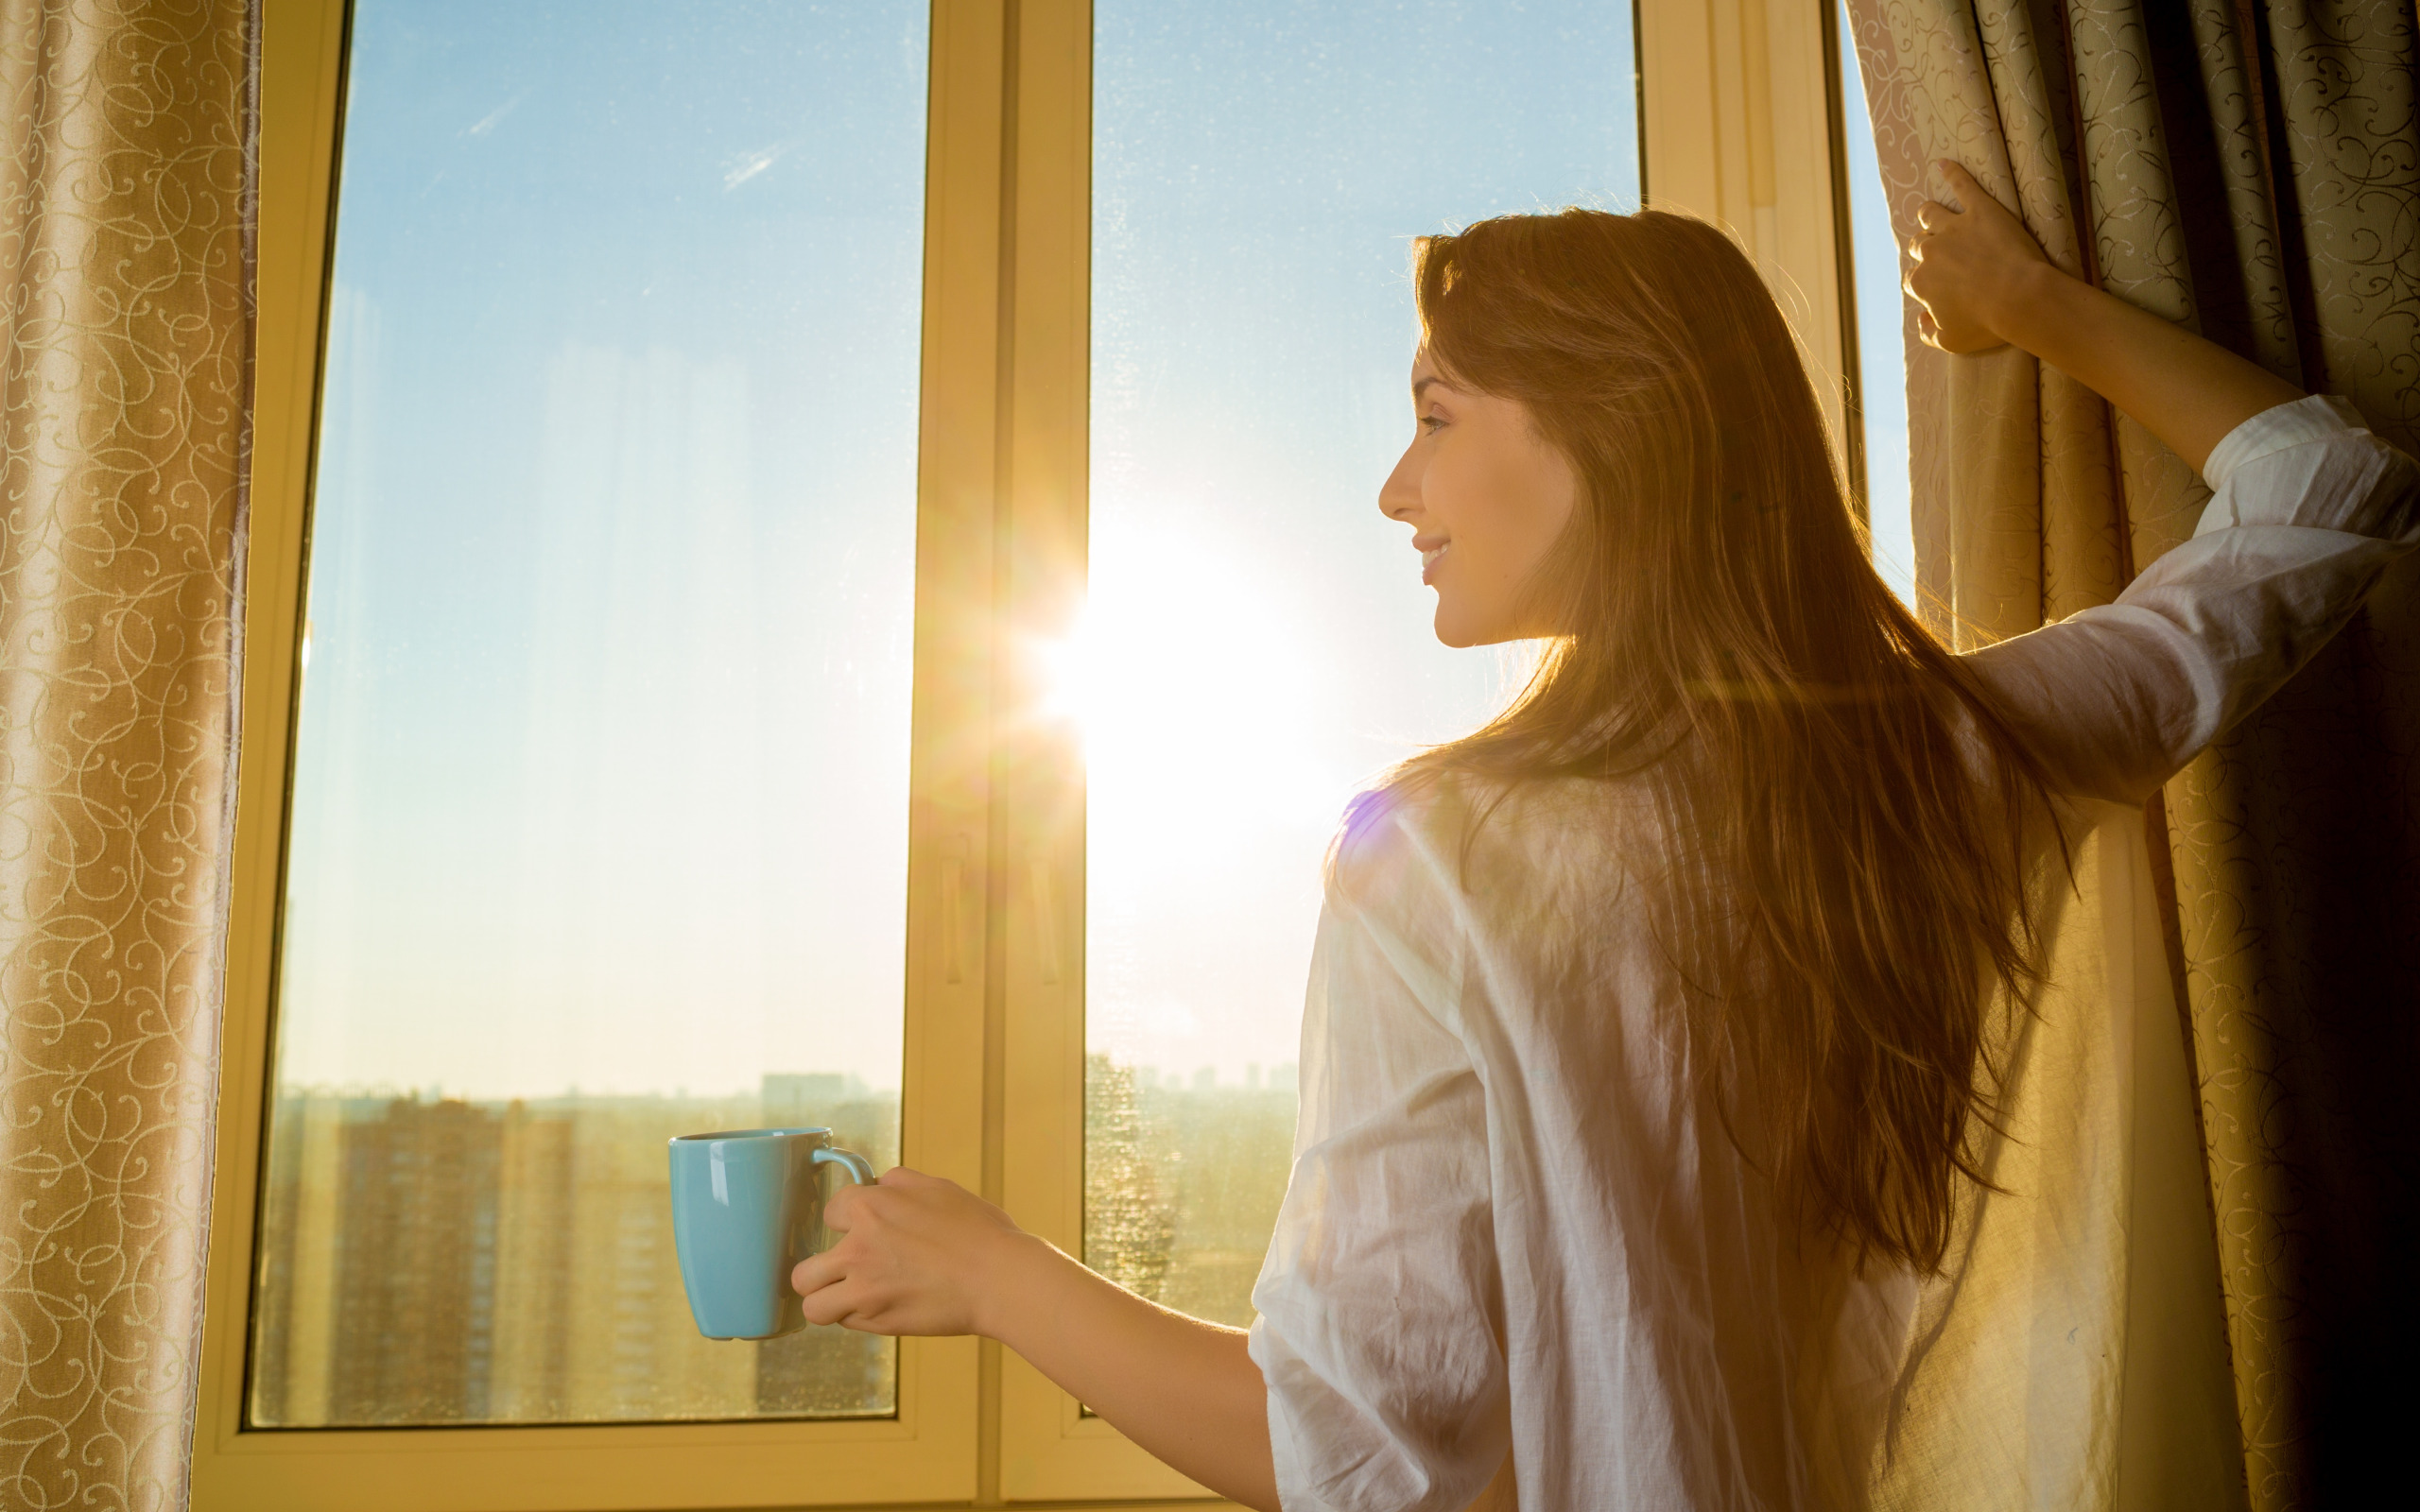 Вагон вошла она улыбнулась из окна. Девушка у окна. Она девушка. Солнечное утро в окне. Женщина возле окна.